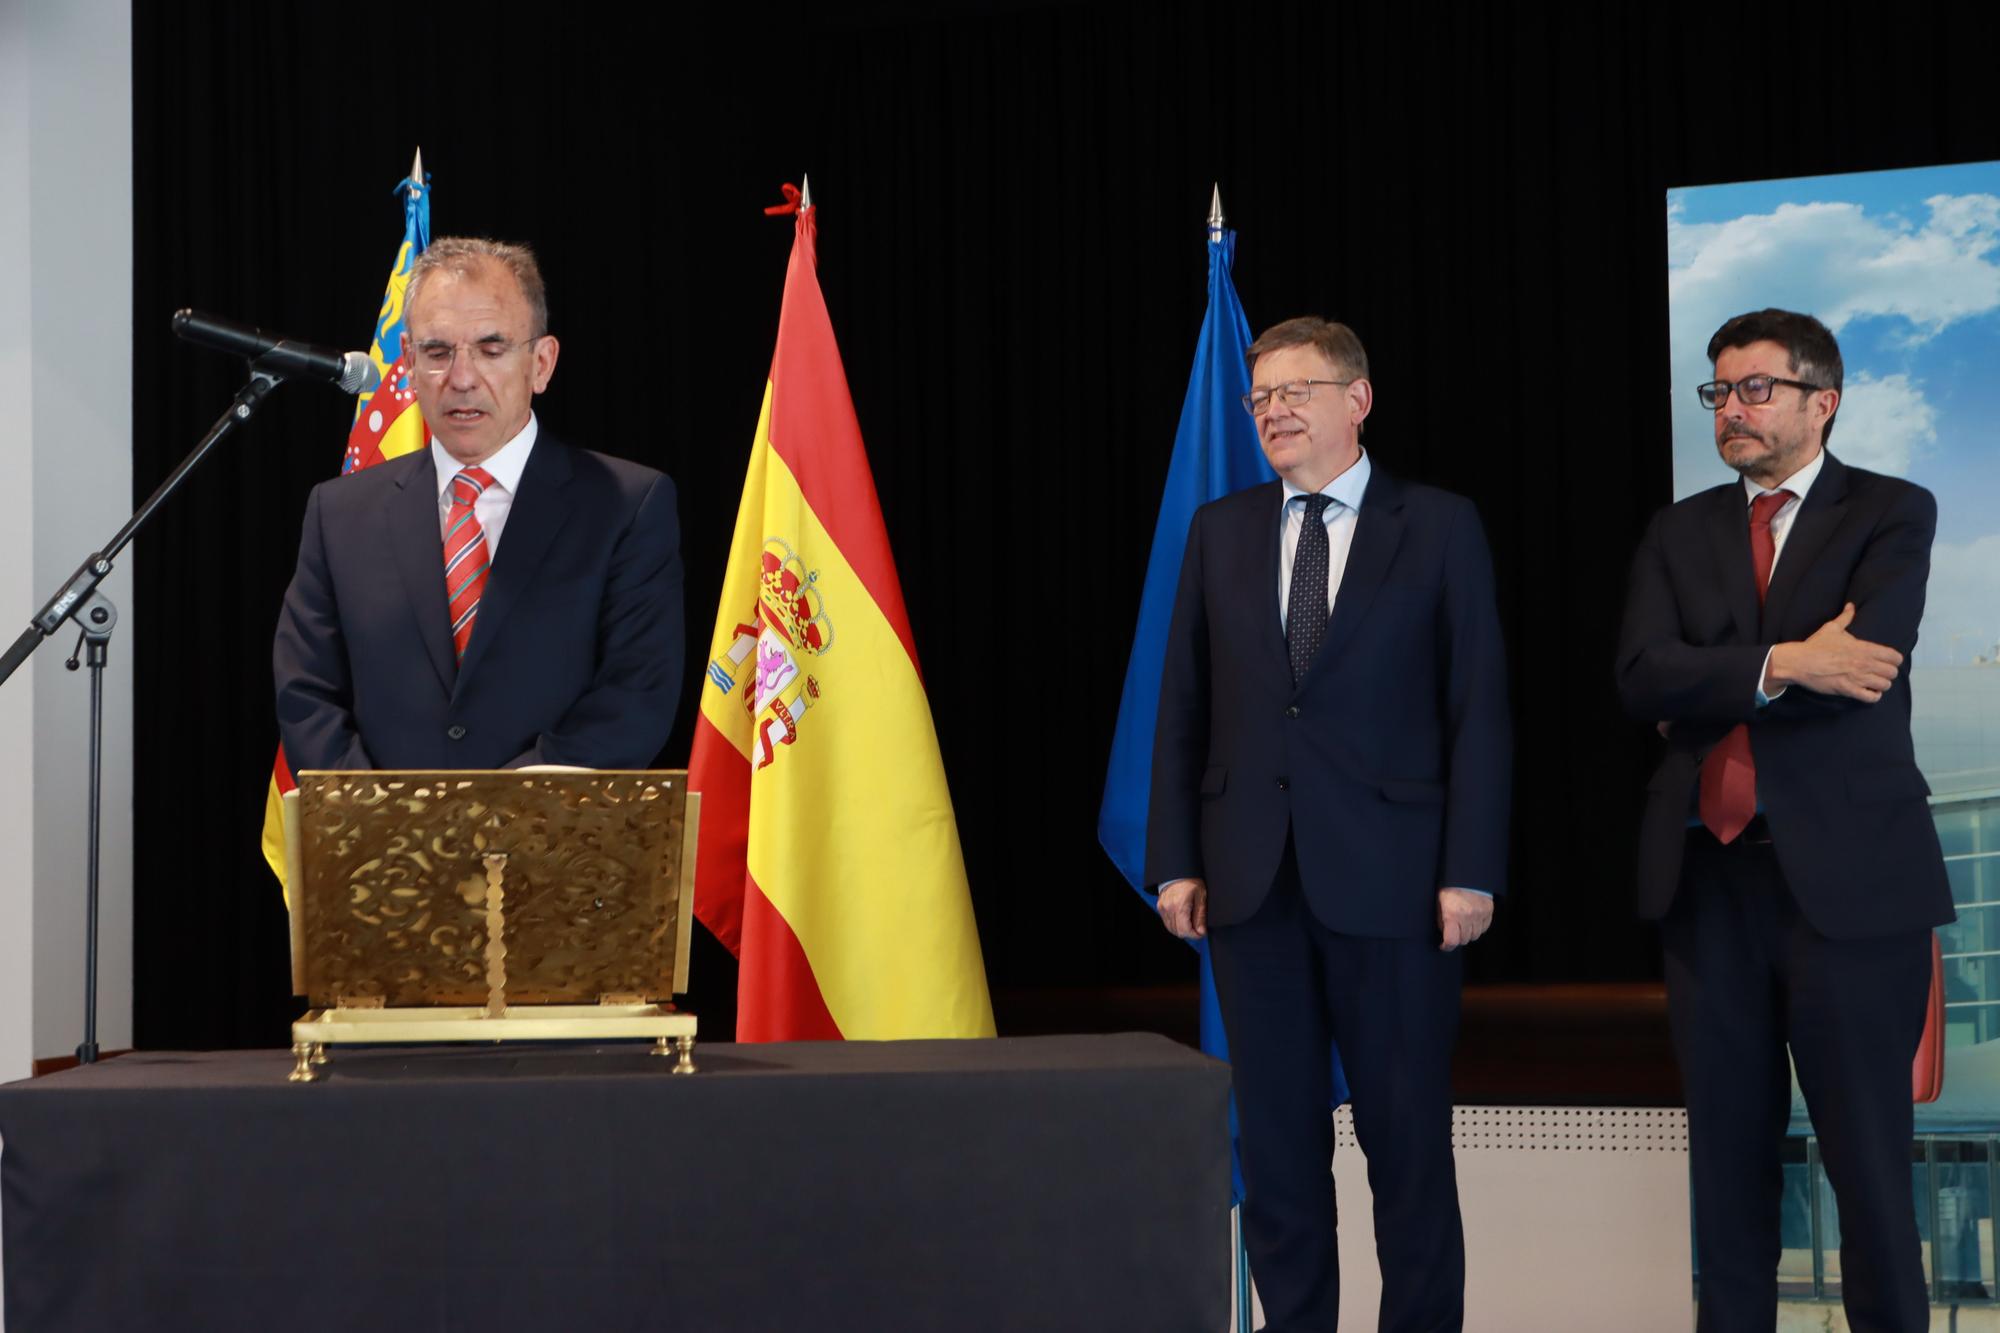 Enrique Vidal toma posesión del cargo de presidente de PortCastelló